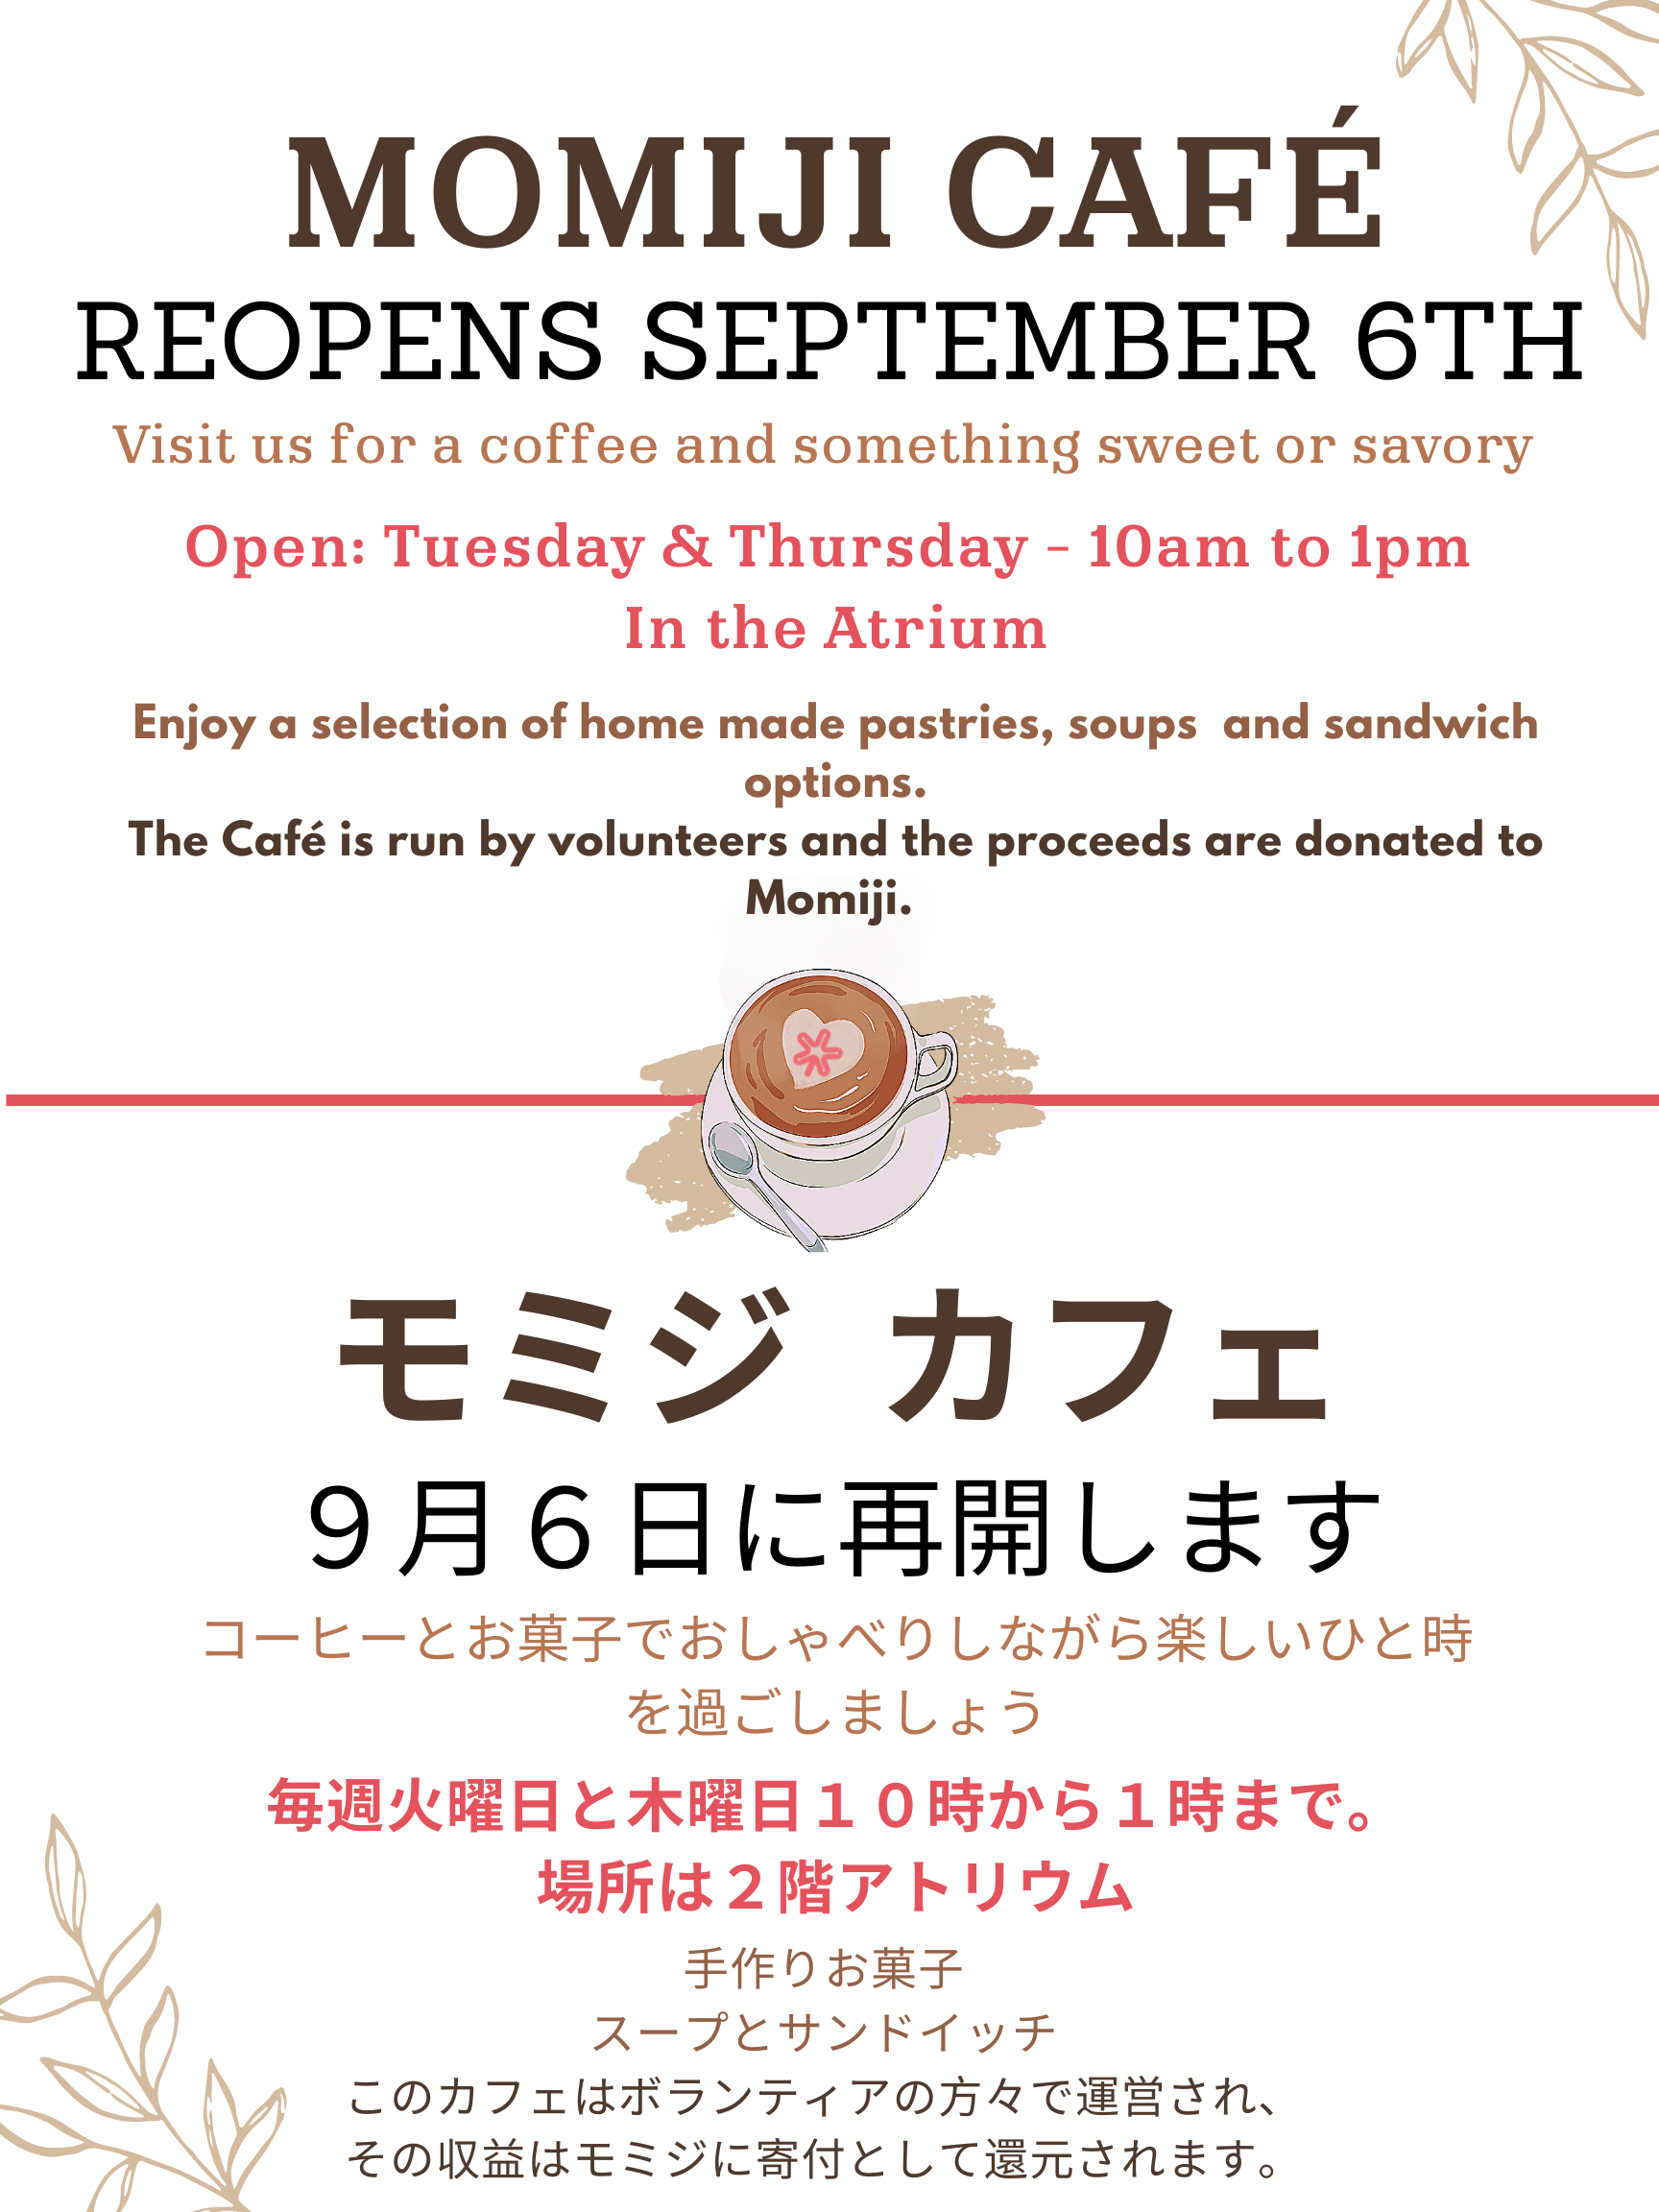 Momiji Café Reopens September 6